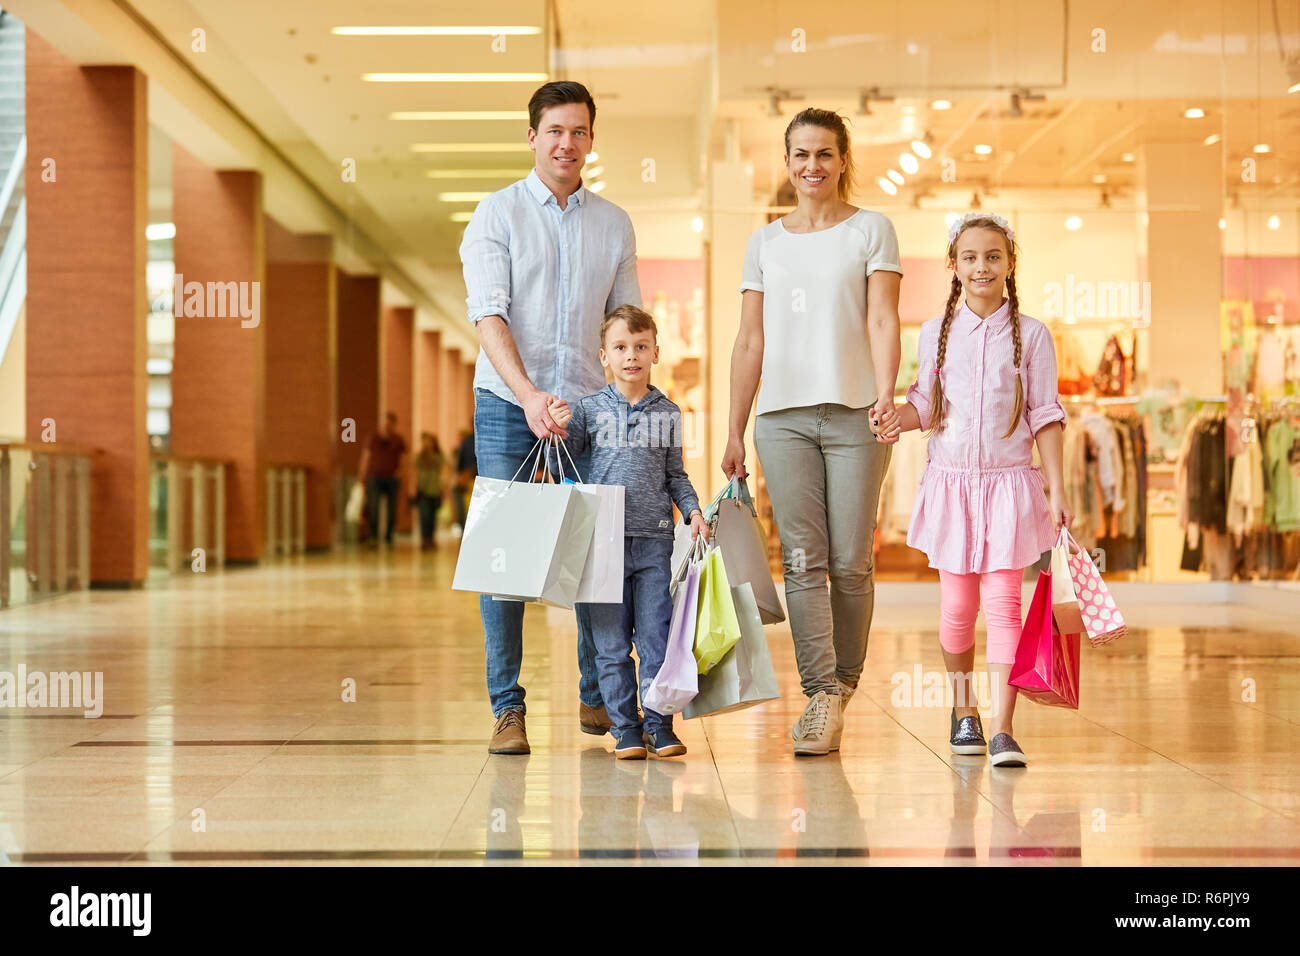 Go shopping mall. Семья шоппинг. Фотосессия в торговом центре семья. Семья с покупками. ТЦ семья.